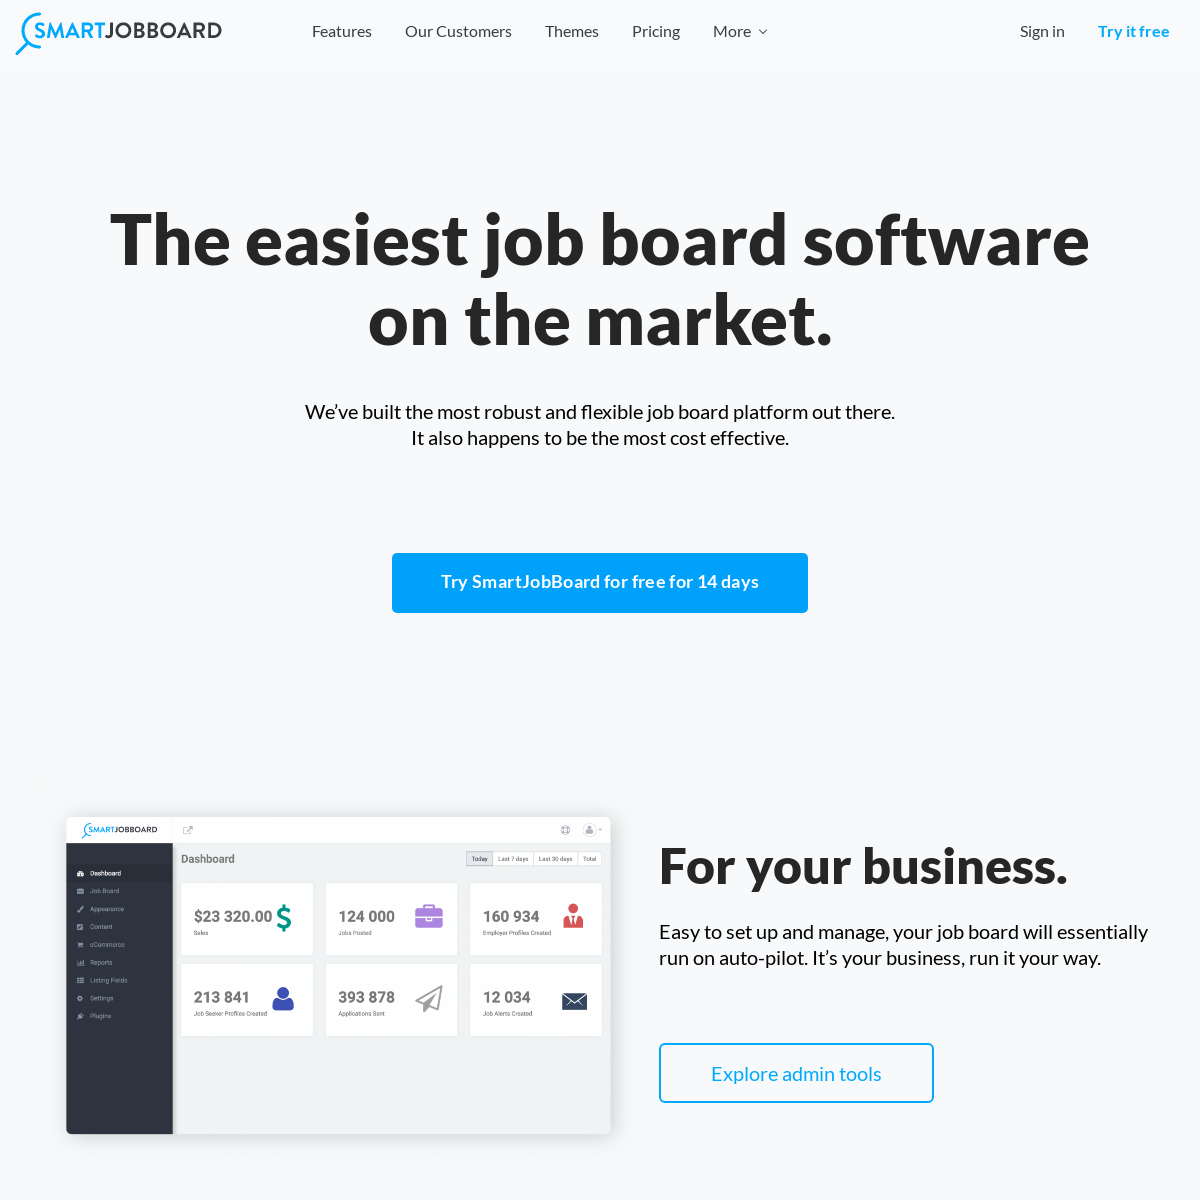 Job board software by Smartjobboard